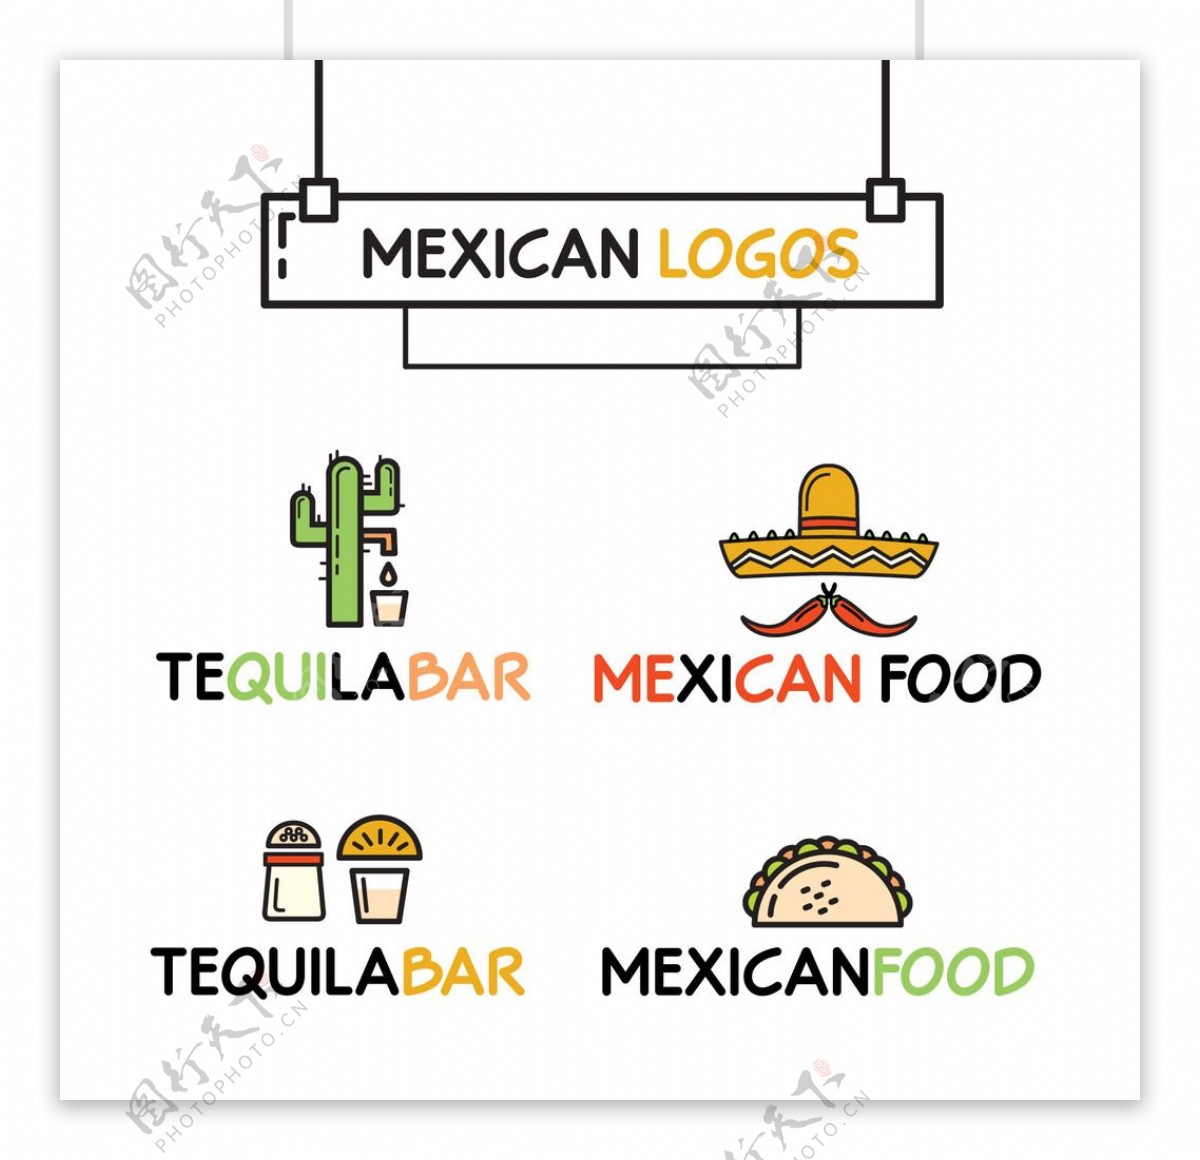 墨西哥餐厅的标志